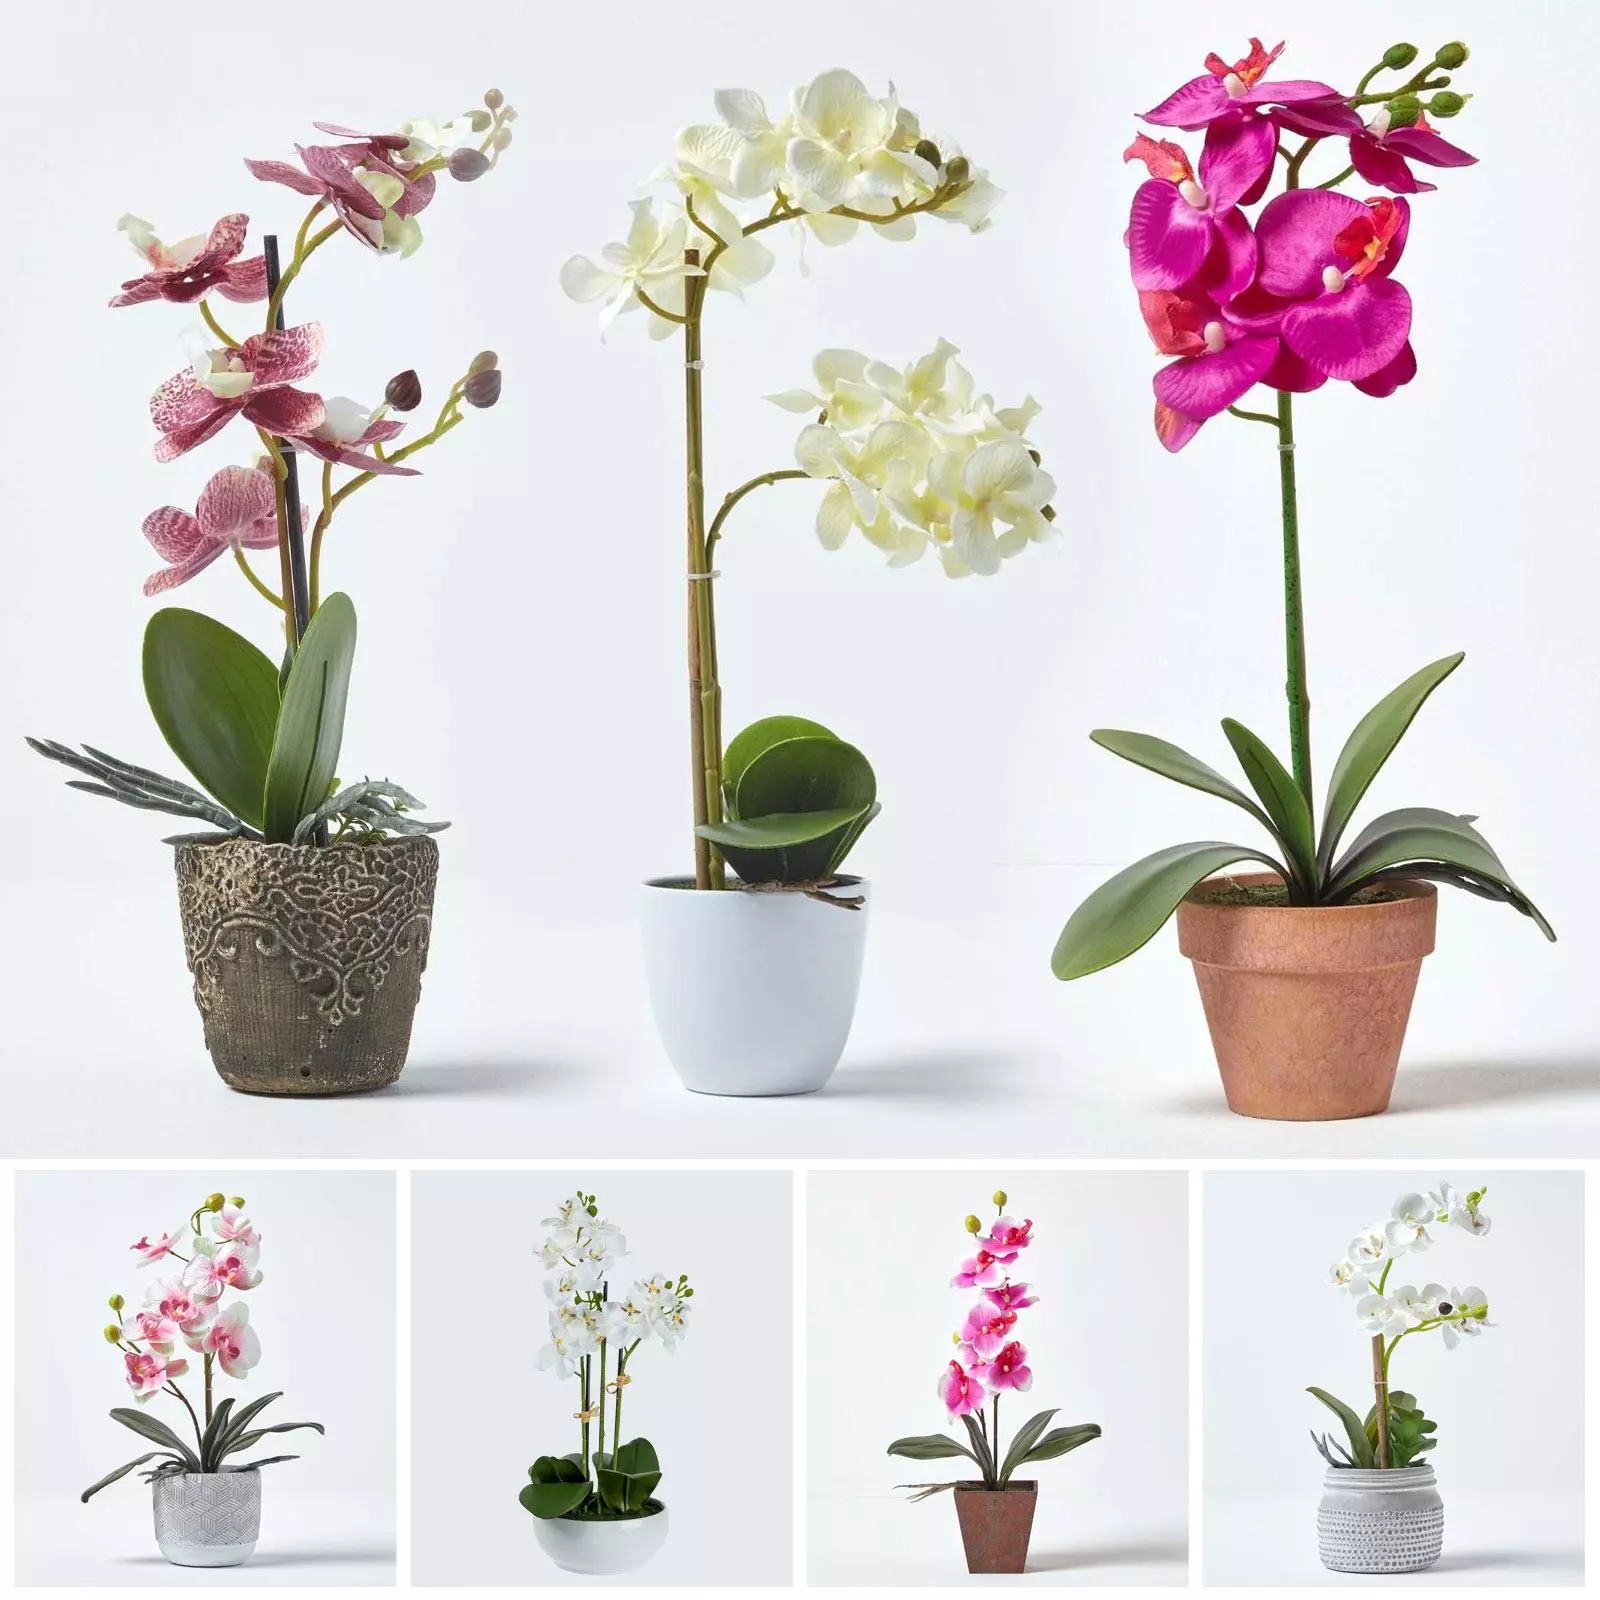 گل ارکیده خالدار (Common Spotted Orchid)نام علمی: (Dactylorhize fuchsia)